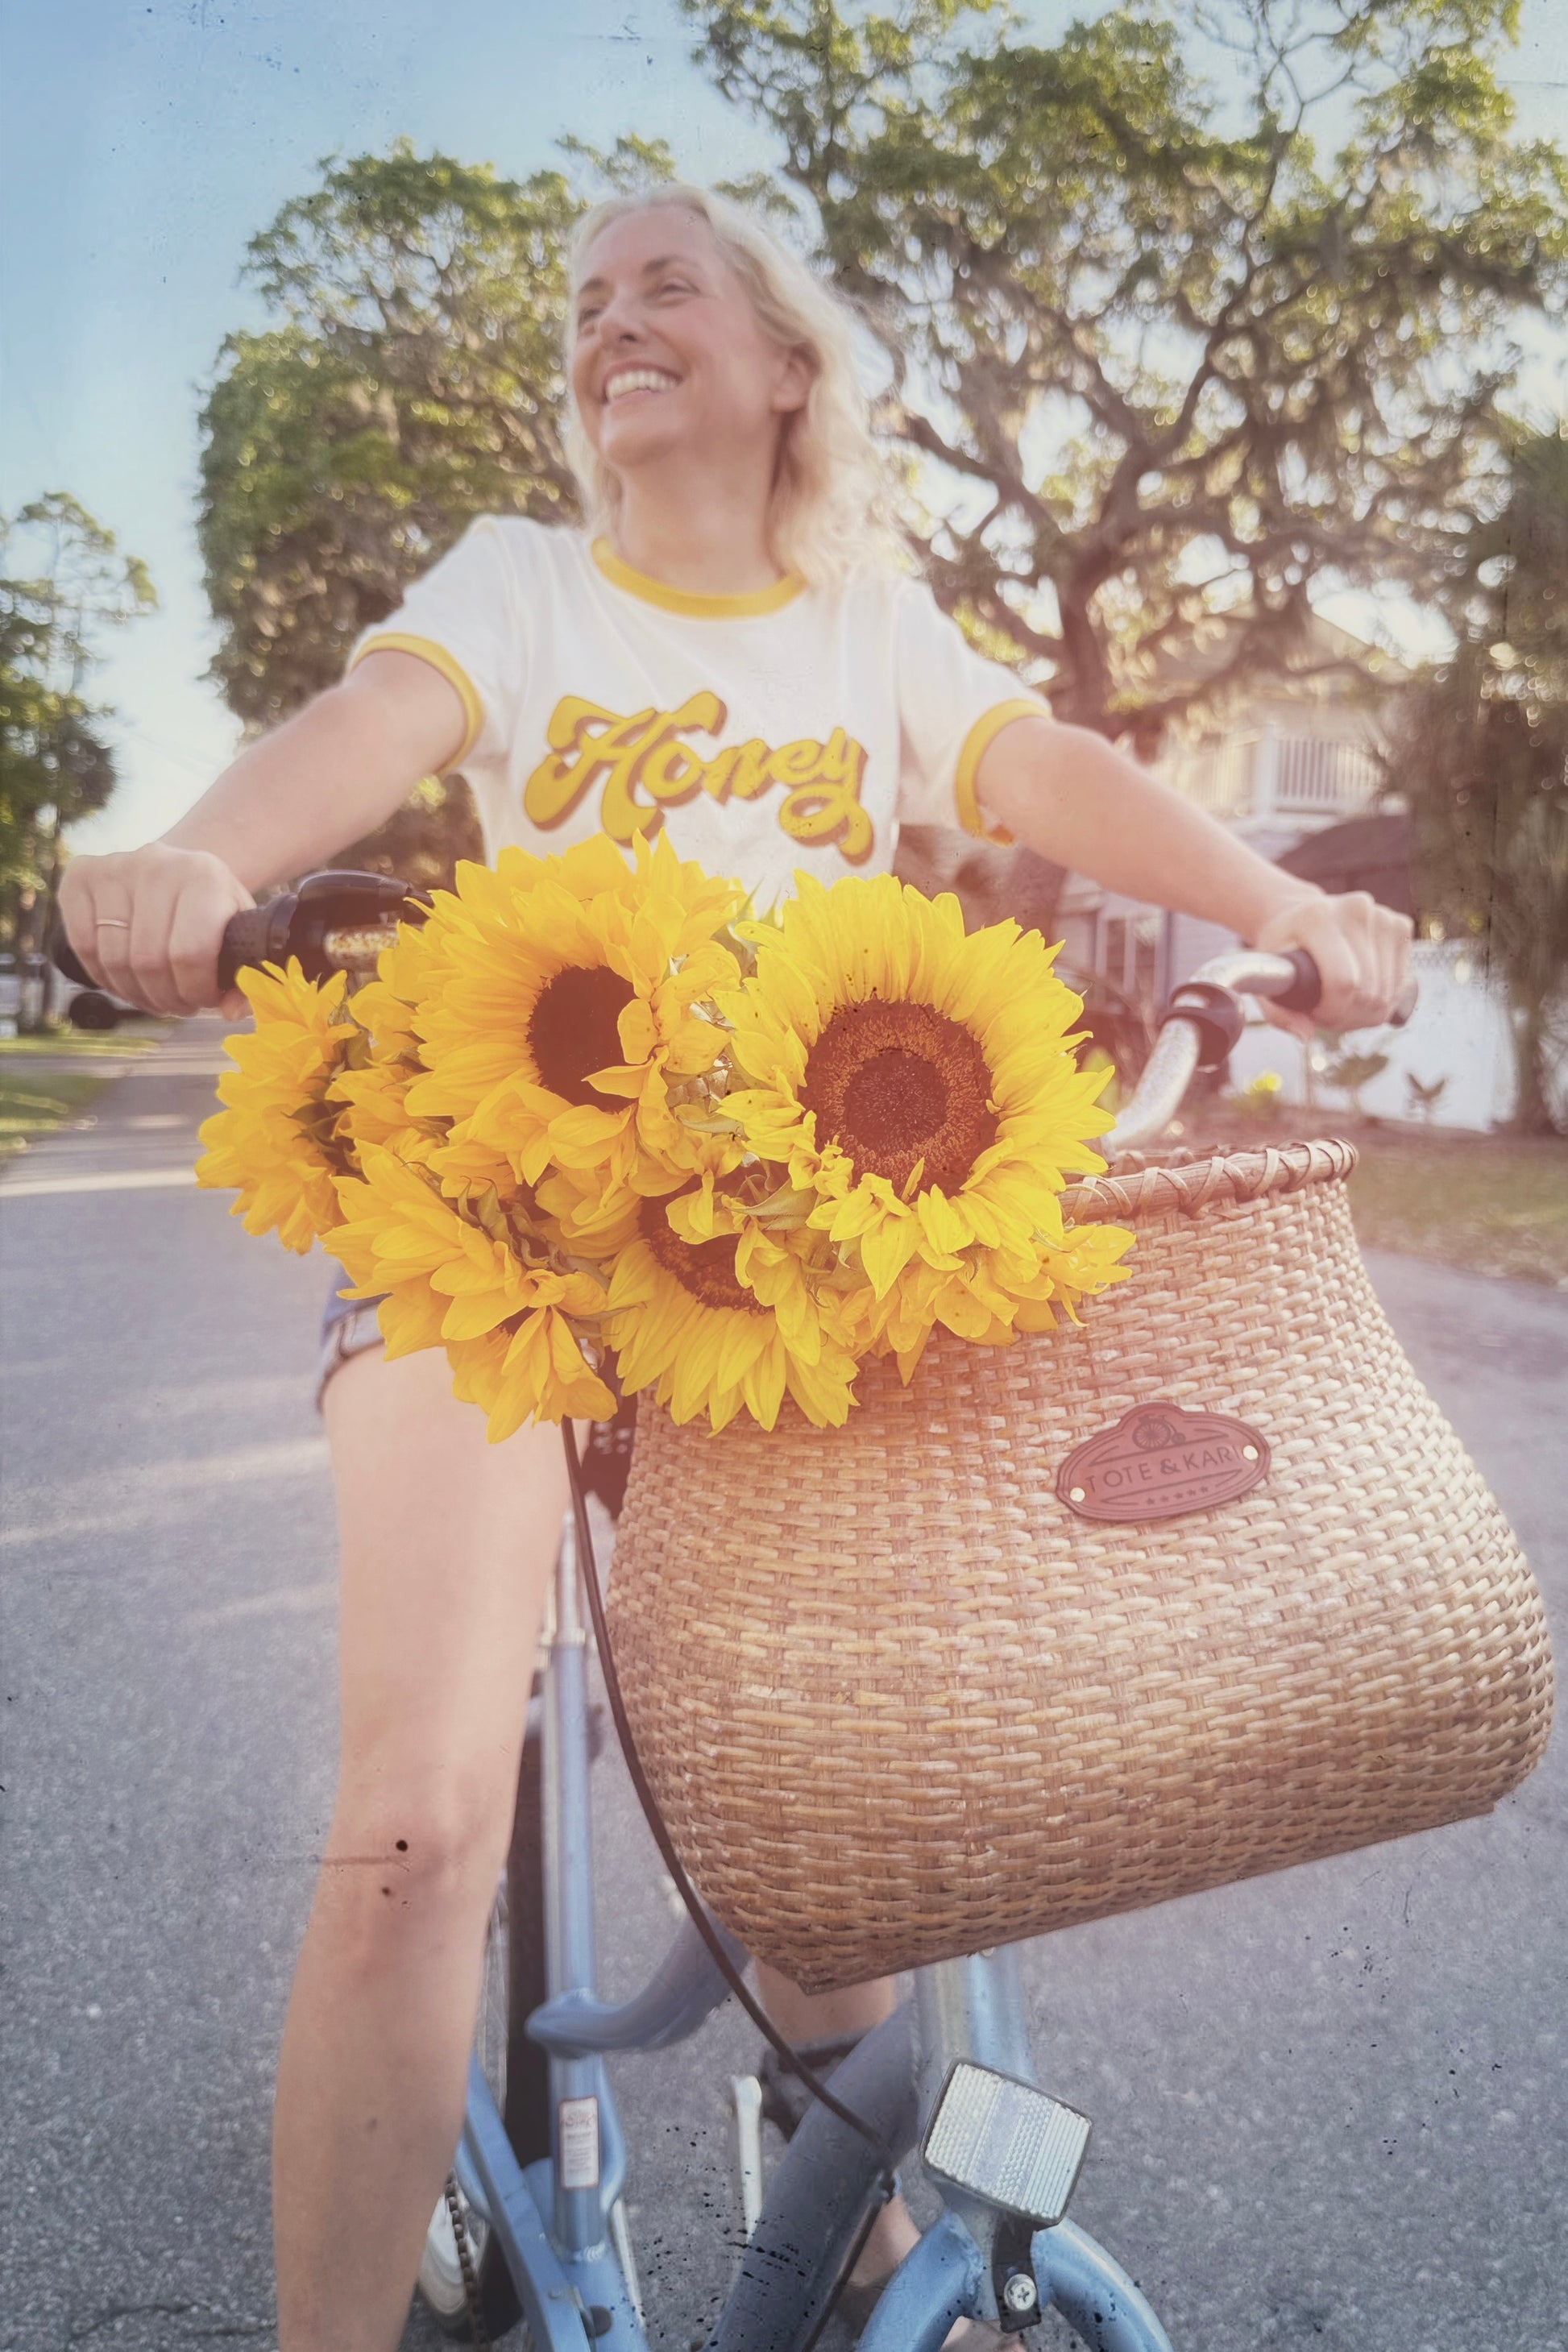 honey-ringer-tee-shirt-and-sunflowers